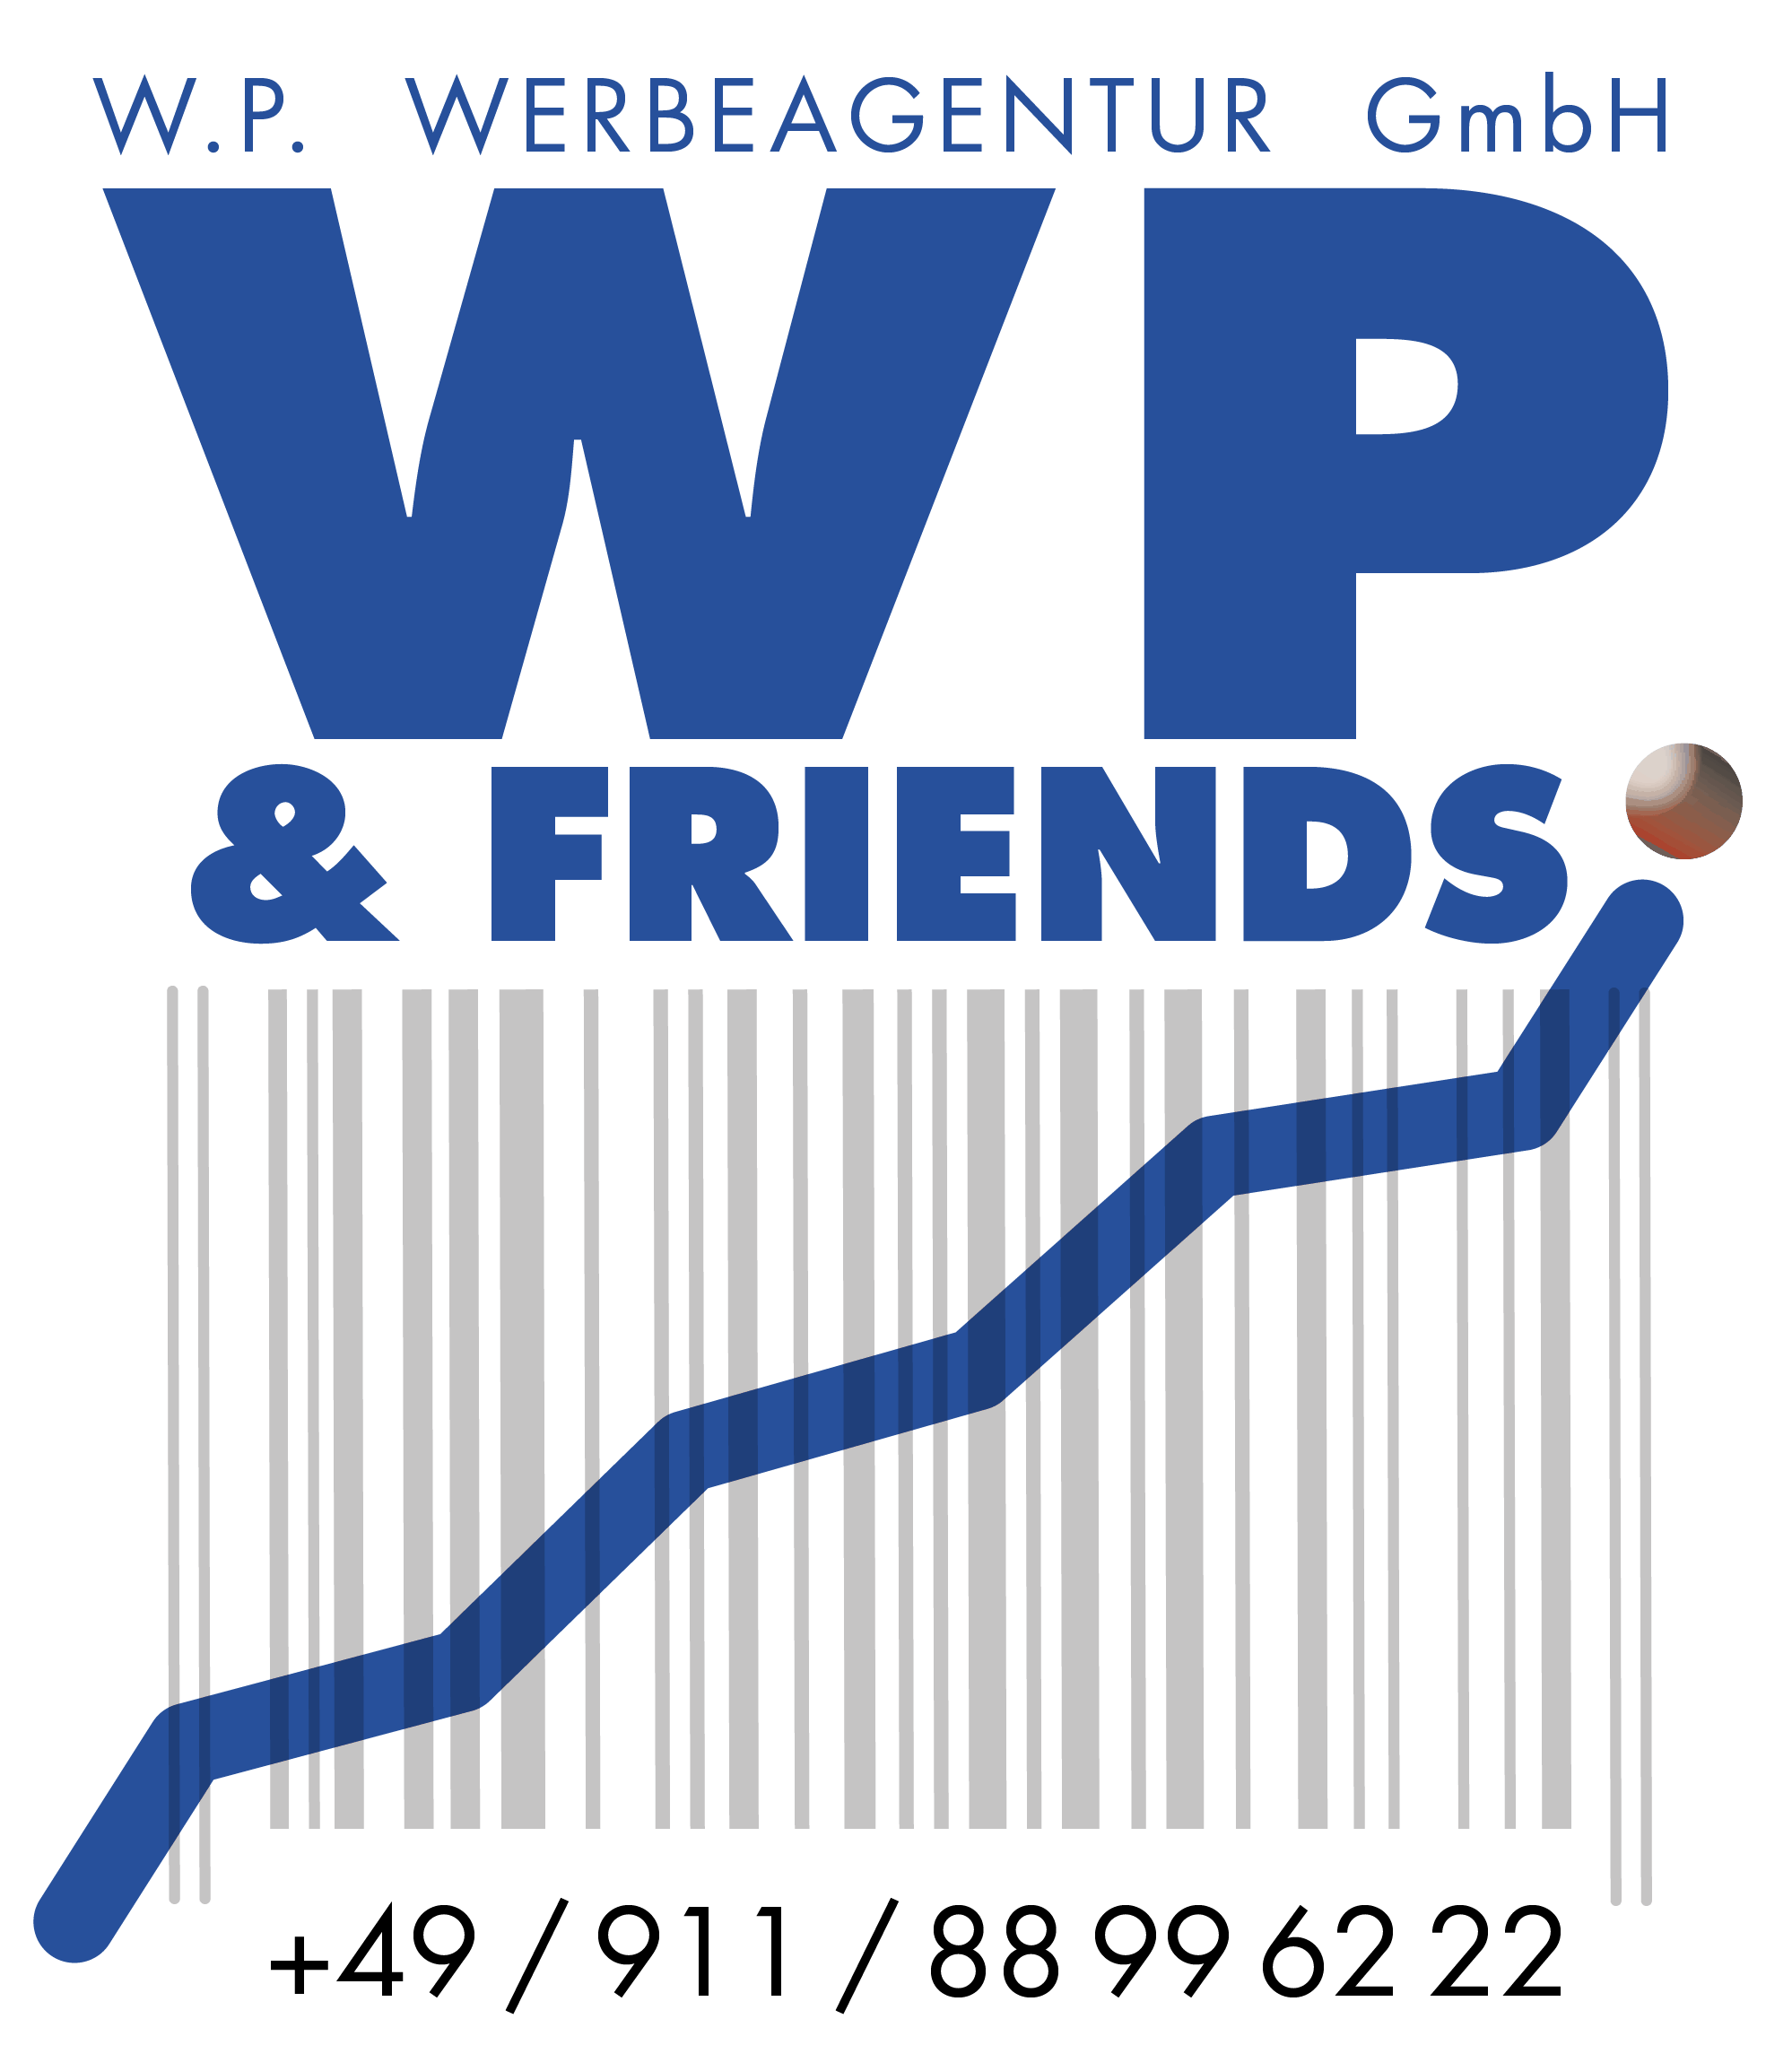 W.P. Werbeagentur GmbH - W.P. & FRIENDS